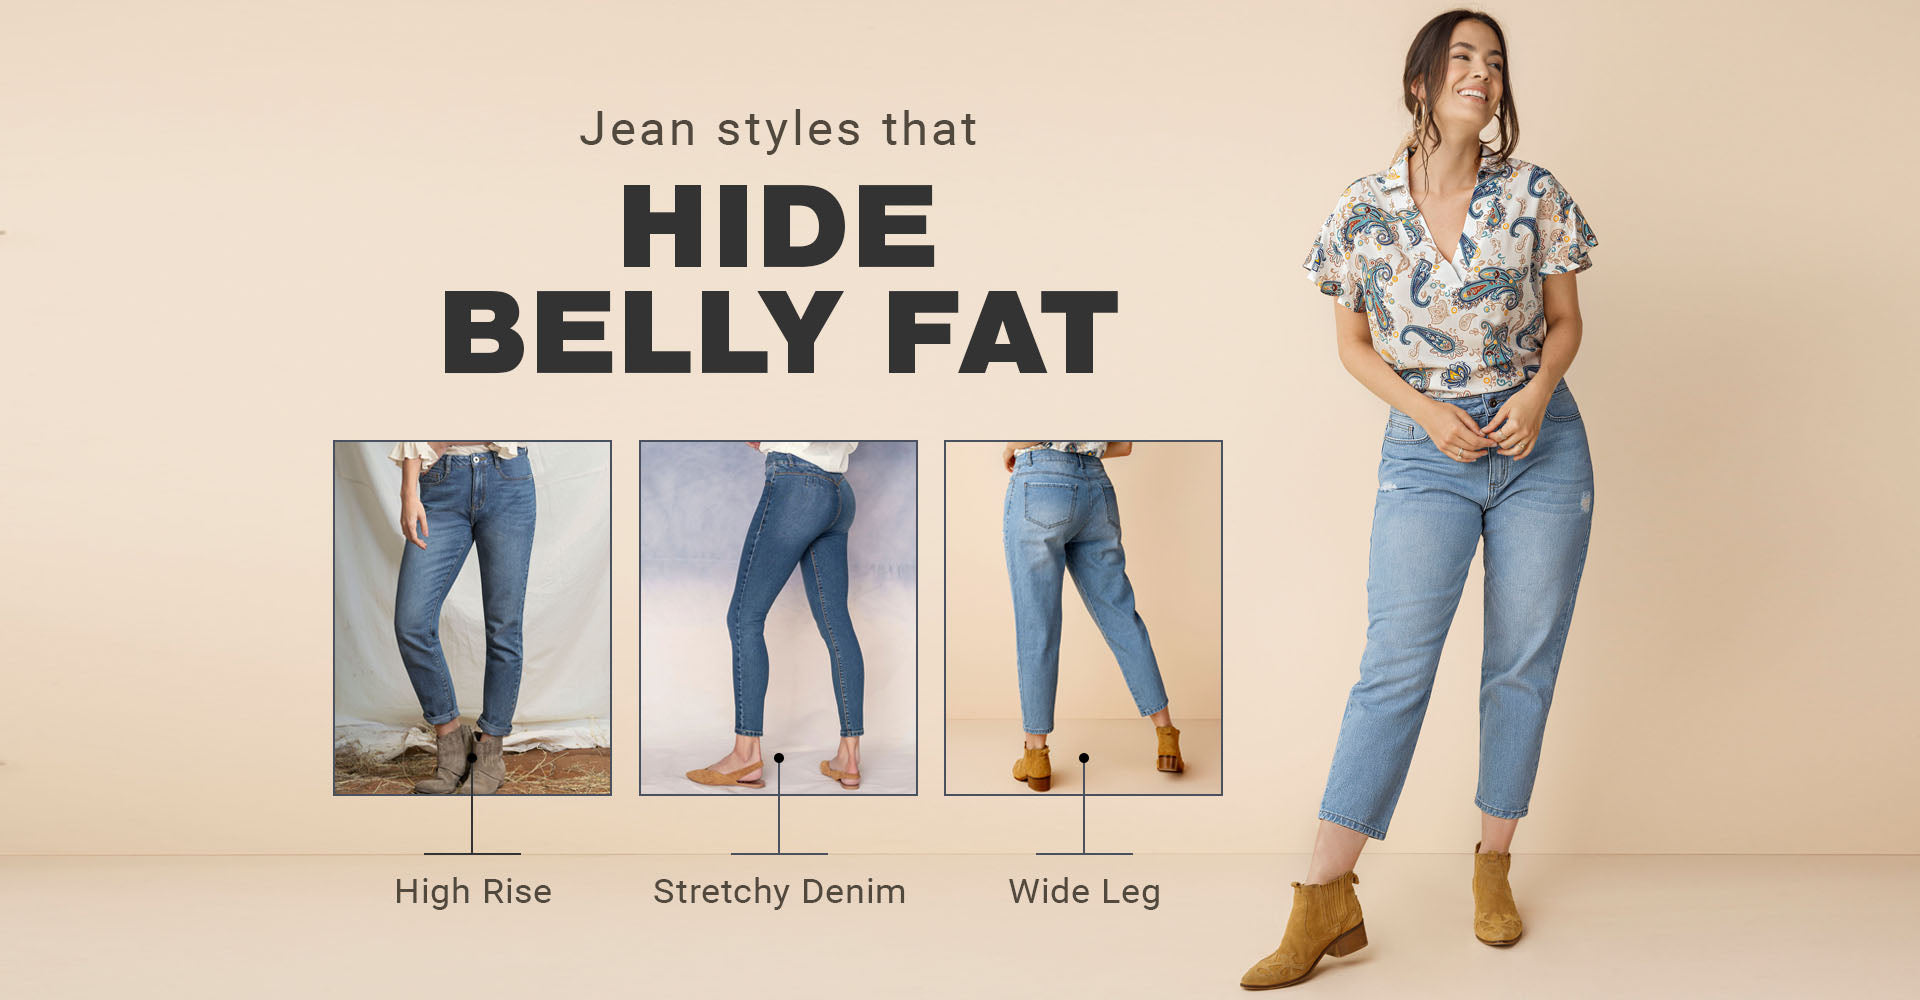 Jean styles that hide belly fat